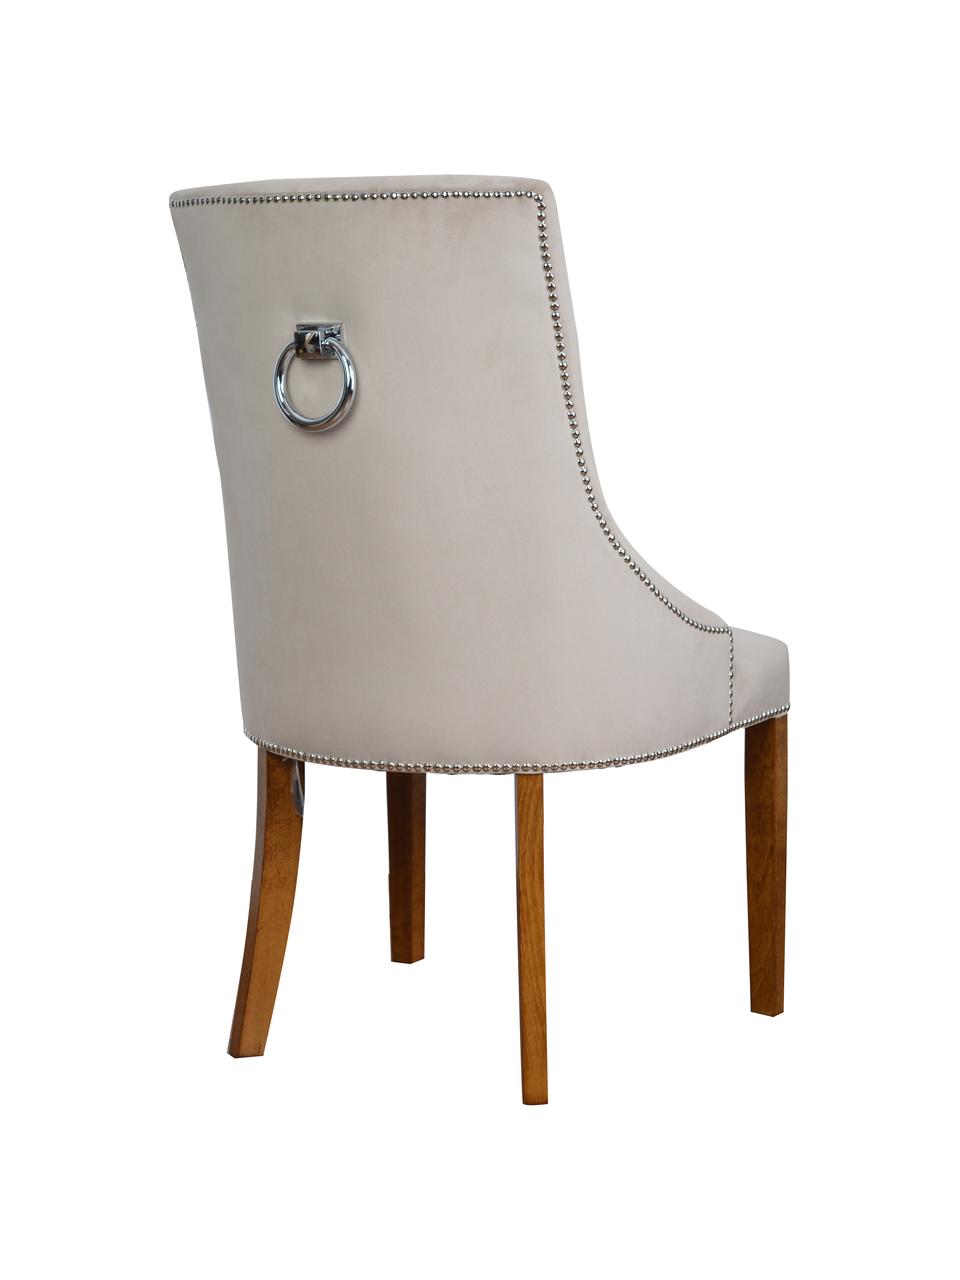 Sametová čalouněná židle Madam, Béžová, dřevo, Š 56 cm, H 64 cm